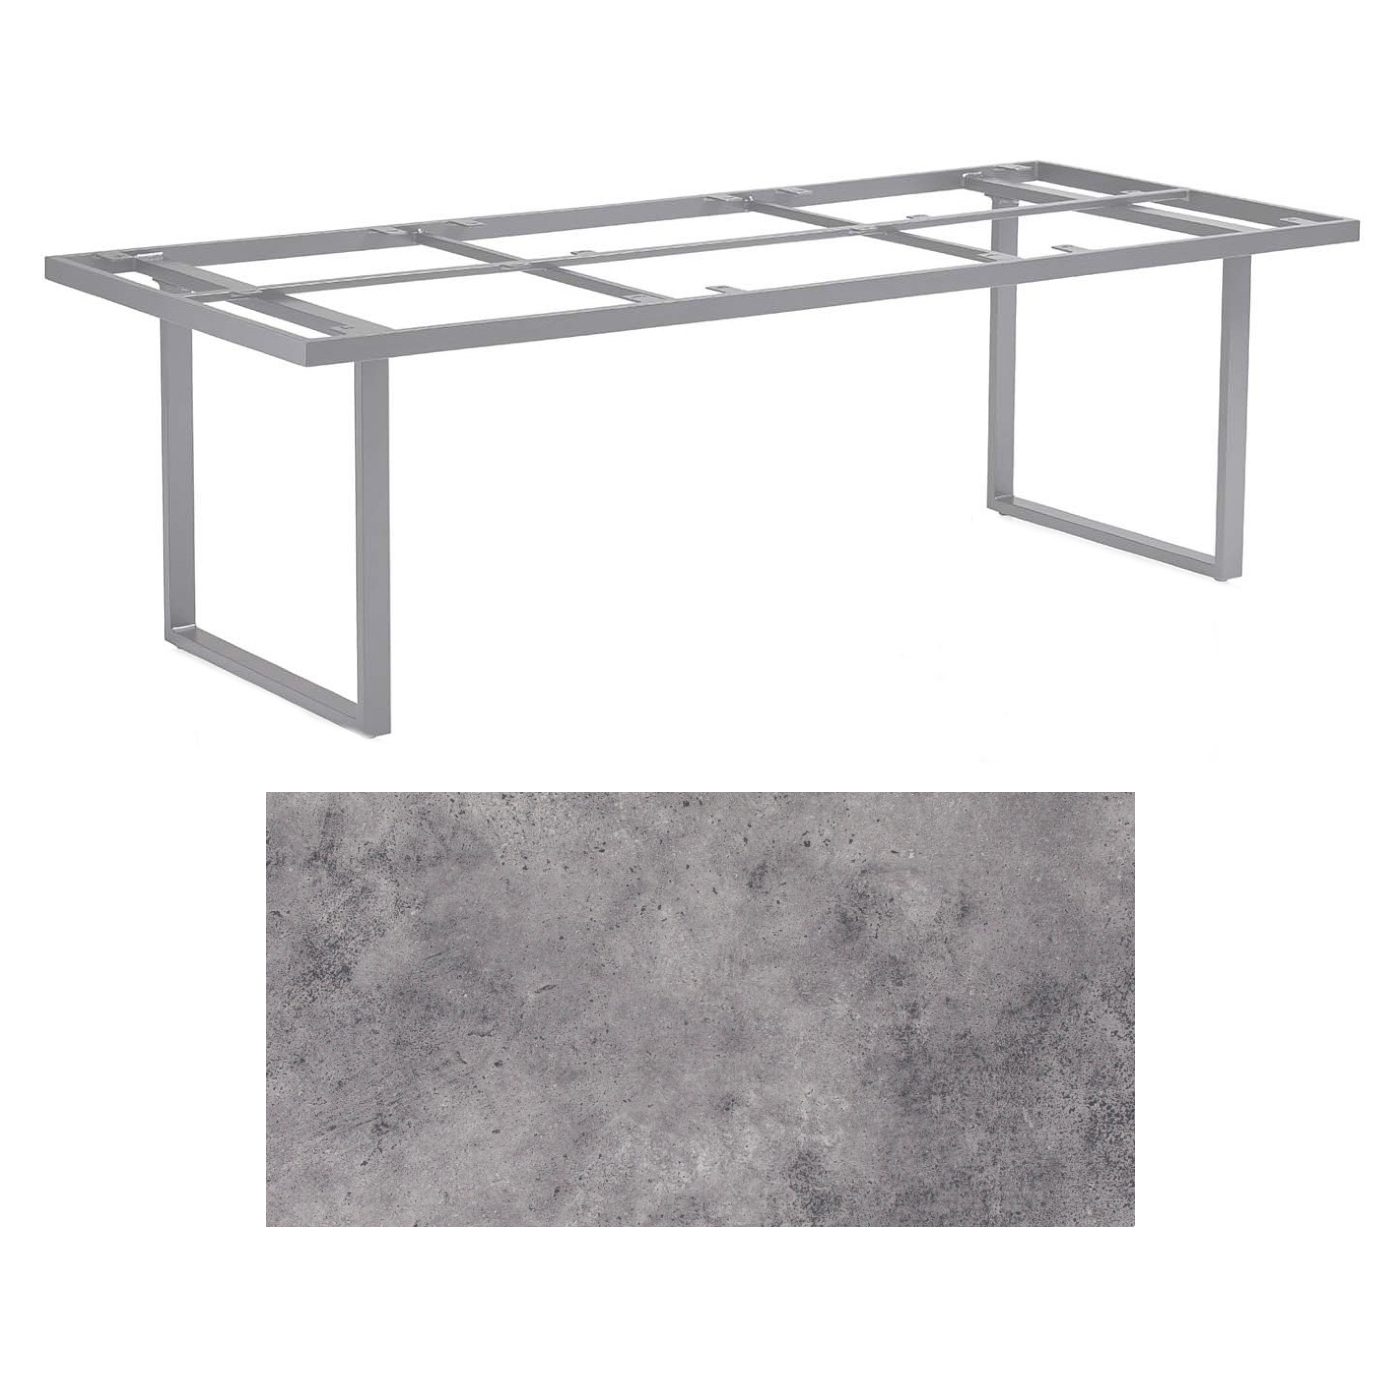 Kettler "Skate" Gartentisch Casual Dining, Gestell Aluminium silber, Tischplatte HPL anthrazit, 220x95 cm, Höhe ca. 68 cm